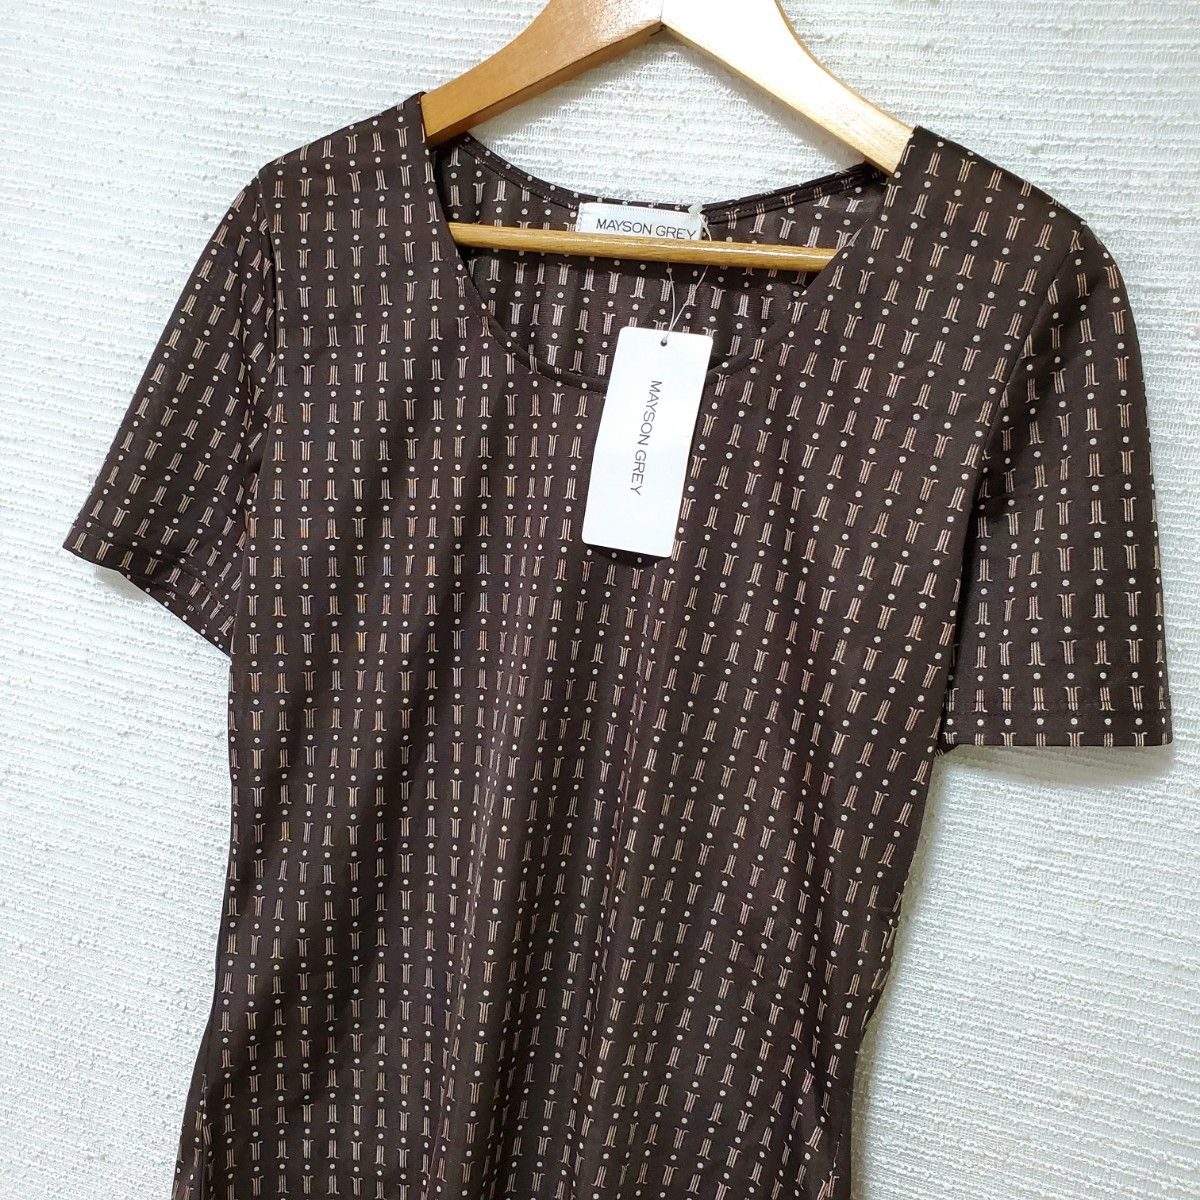 MAYSON GREY メイソングレイ 新品タグ付き 半袖 カットソー Tシャツ 日本製 レディース 2 Mサイズ 茶 ブラウン